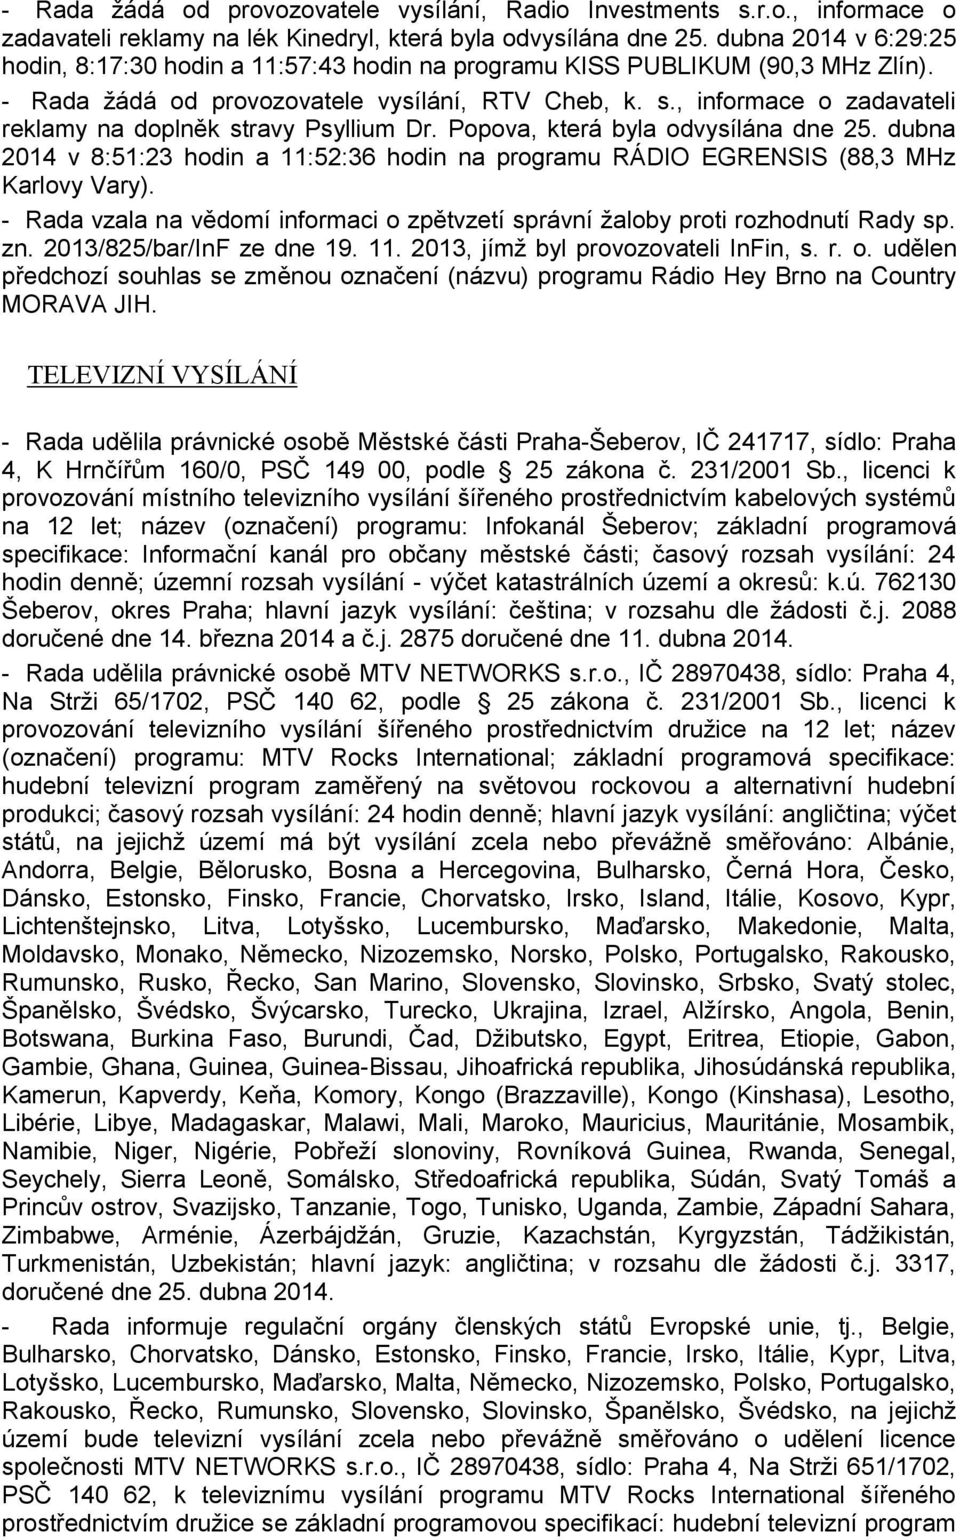 , informace o zadavateli reklamy na doplněk stravy Psyllium Dr. Popova, která byla odvysílána dne 25. dubna 2014 v 8:51:23 hodin a 11:52:36 hodin na programu RÁDIO EGRENSIS (88,3 MHz Karlovy Vary).